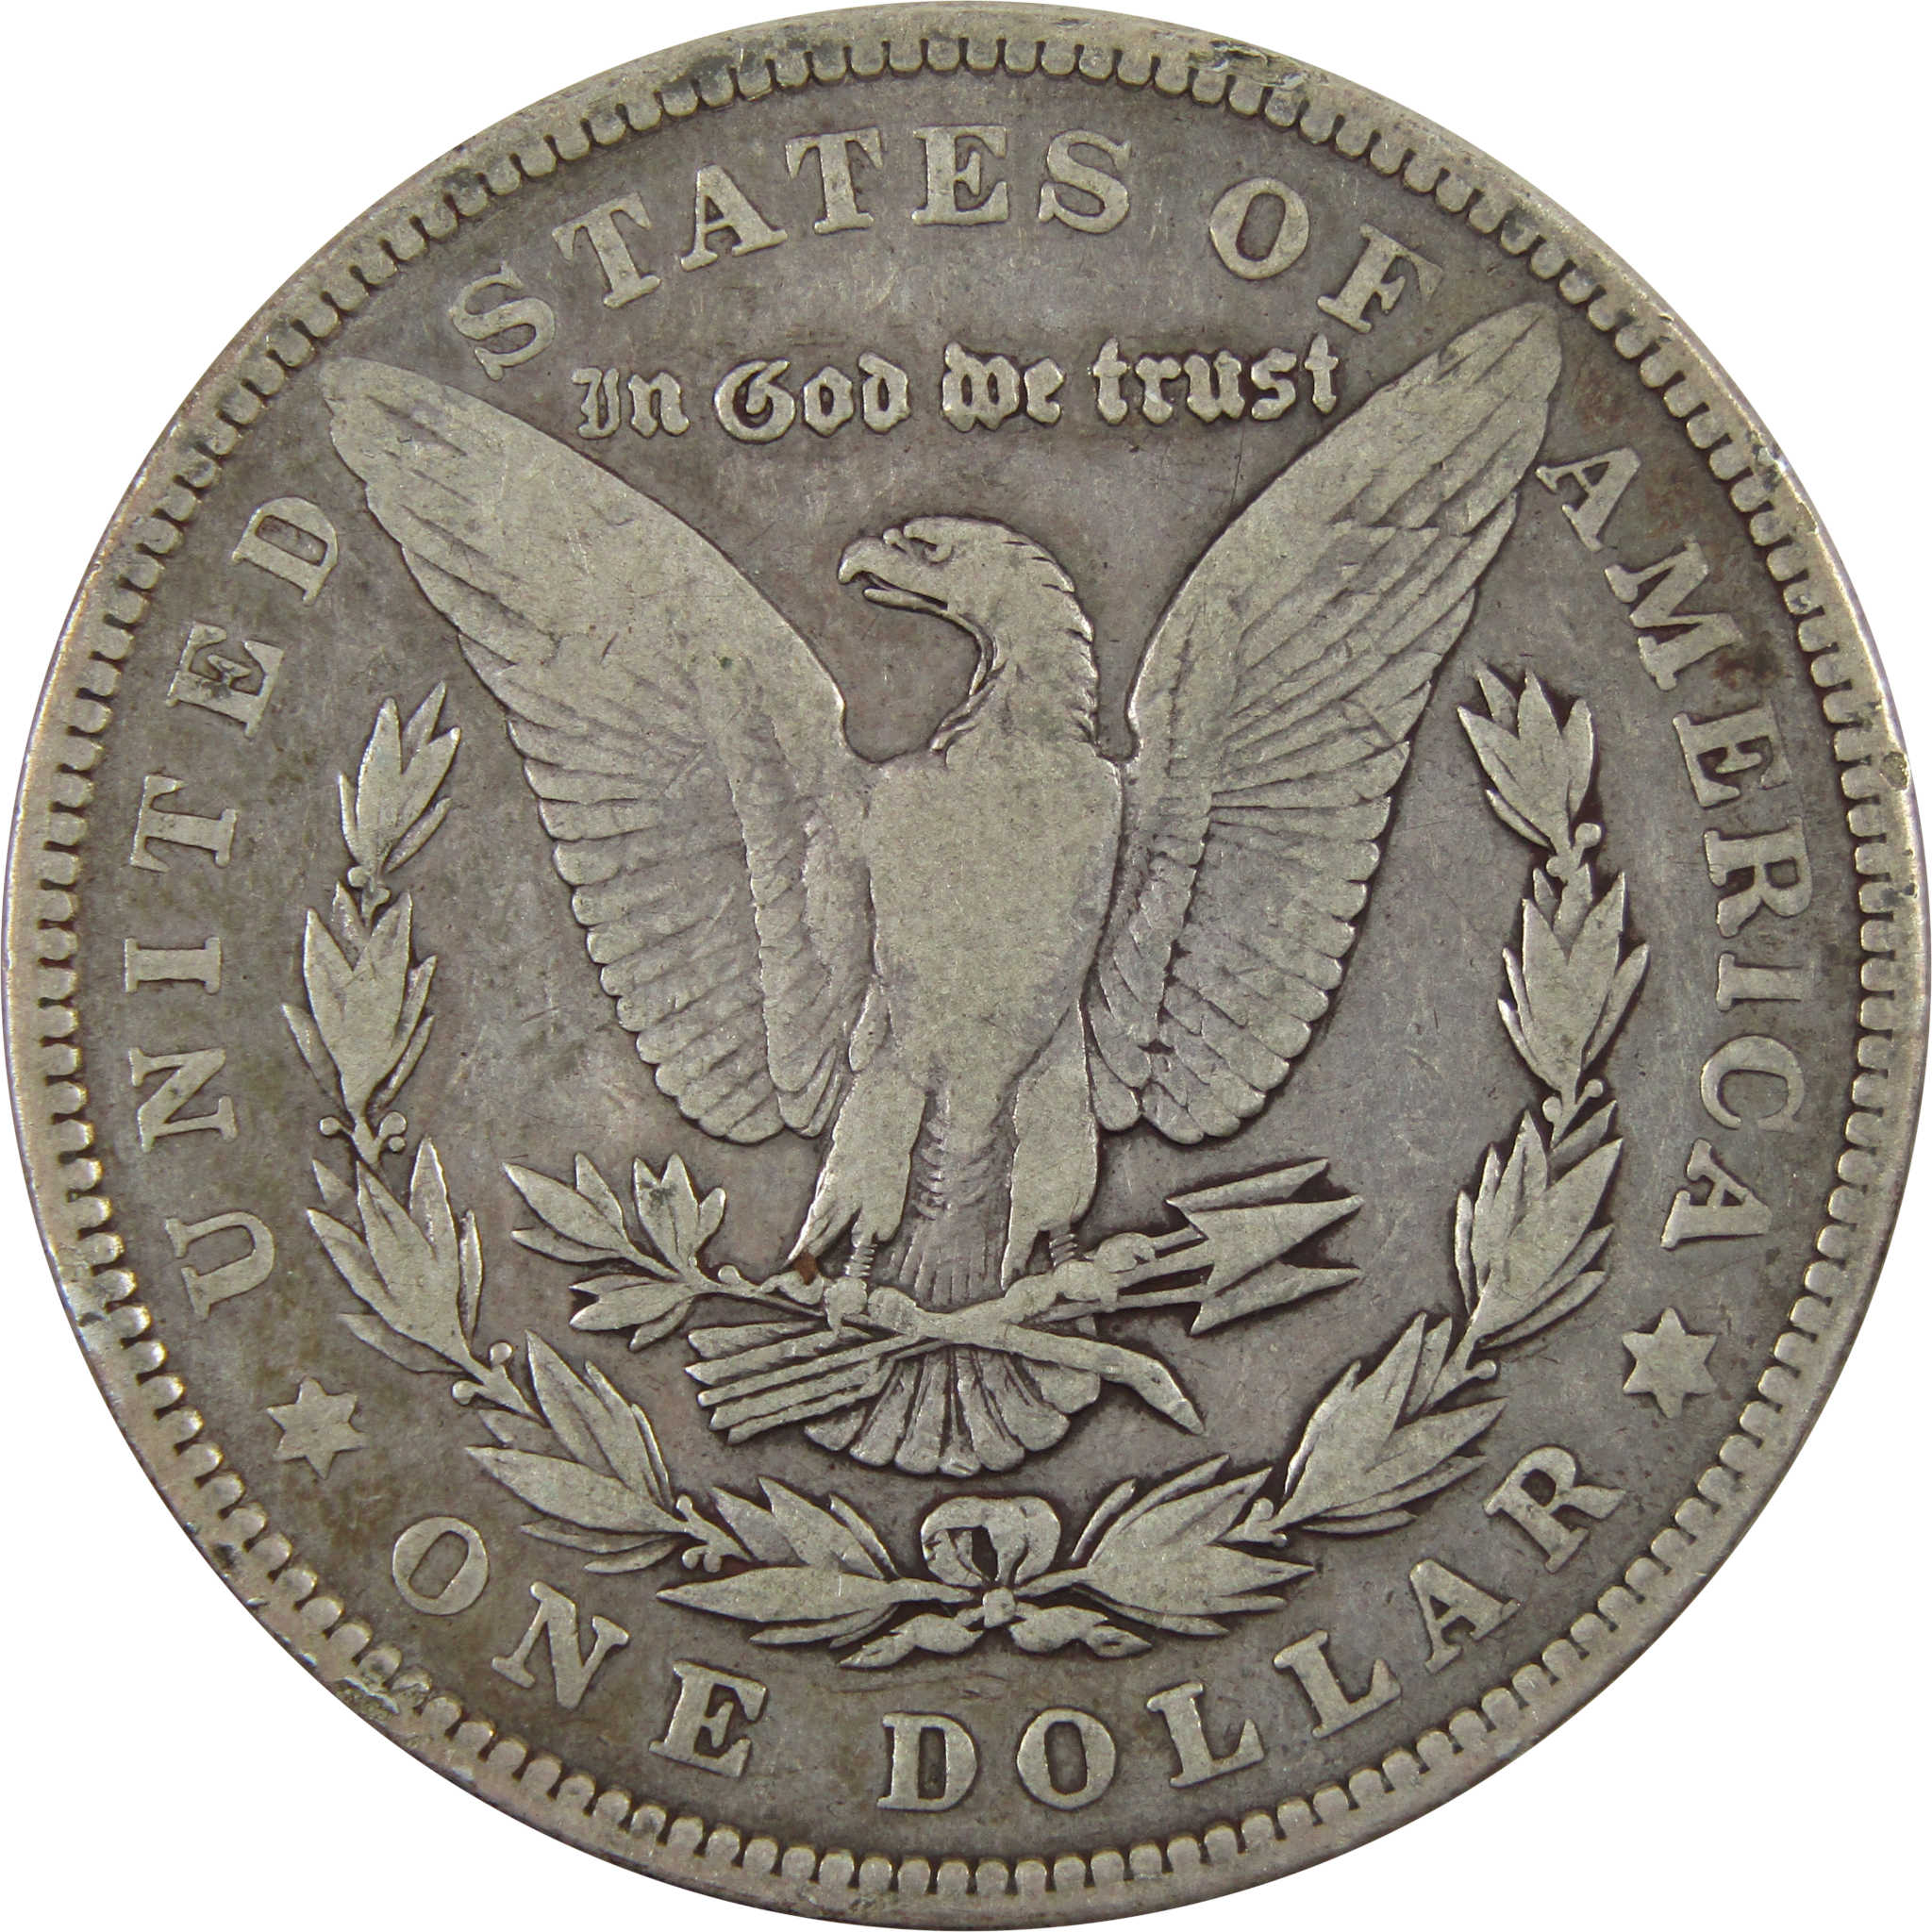 1902 Morgan Dollar F Fine 90% Silver $1 Coin SKU:I4750 - Morgan coin - Morgan silver dollar - Morgan silver dollar for sale - Profile Coins &amp; Collectibles